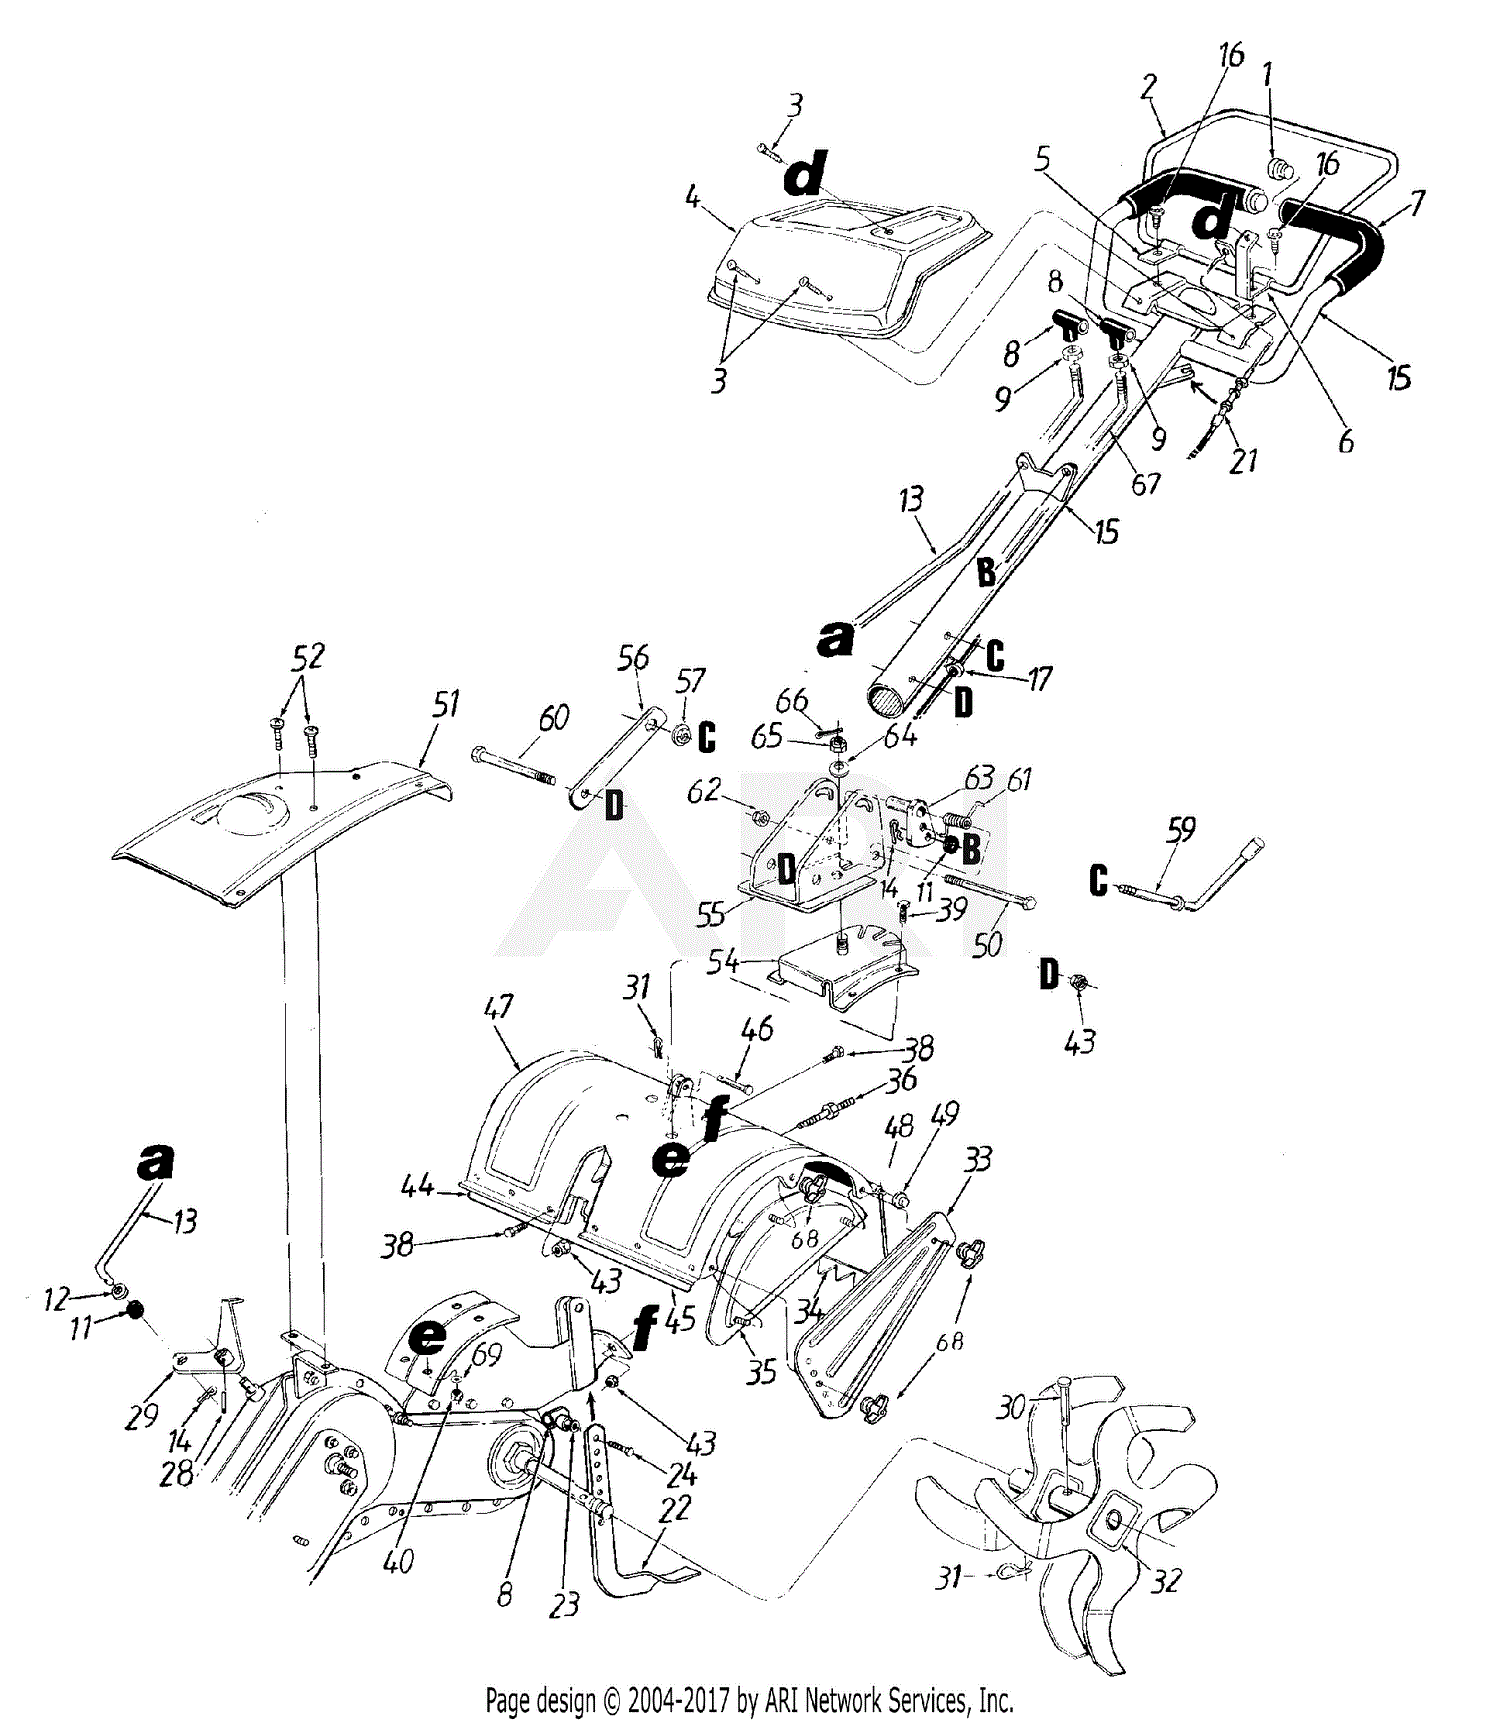 29+ Rototiller Mtd Tiller Parts Diagram